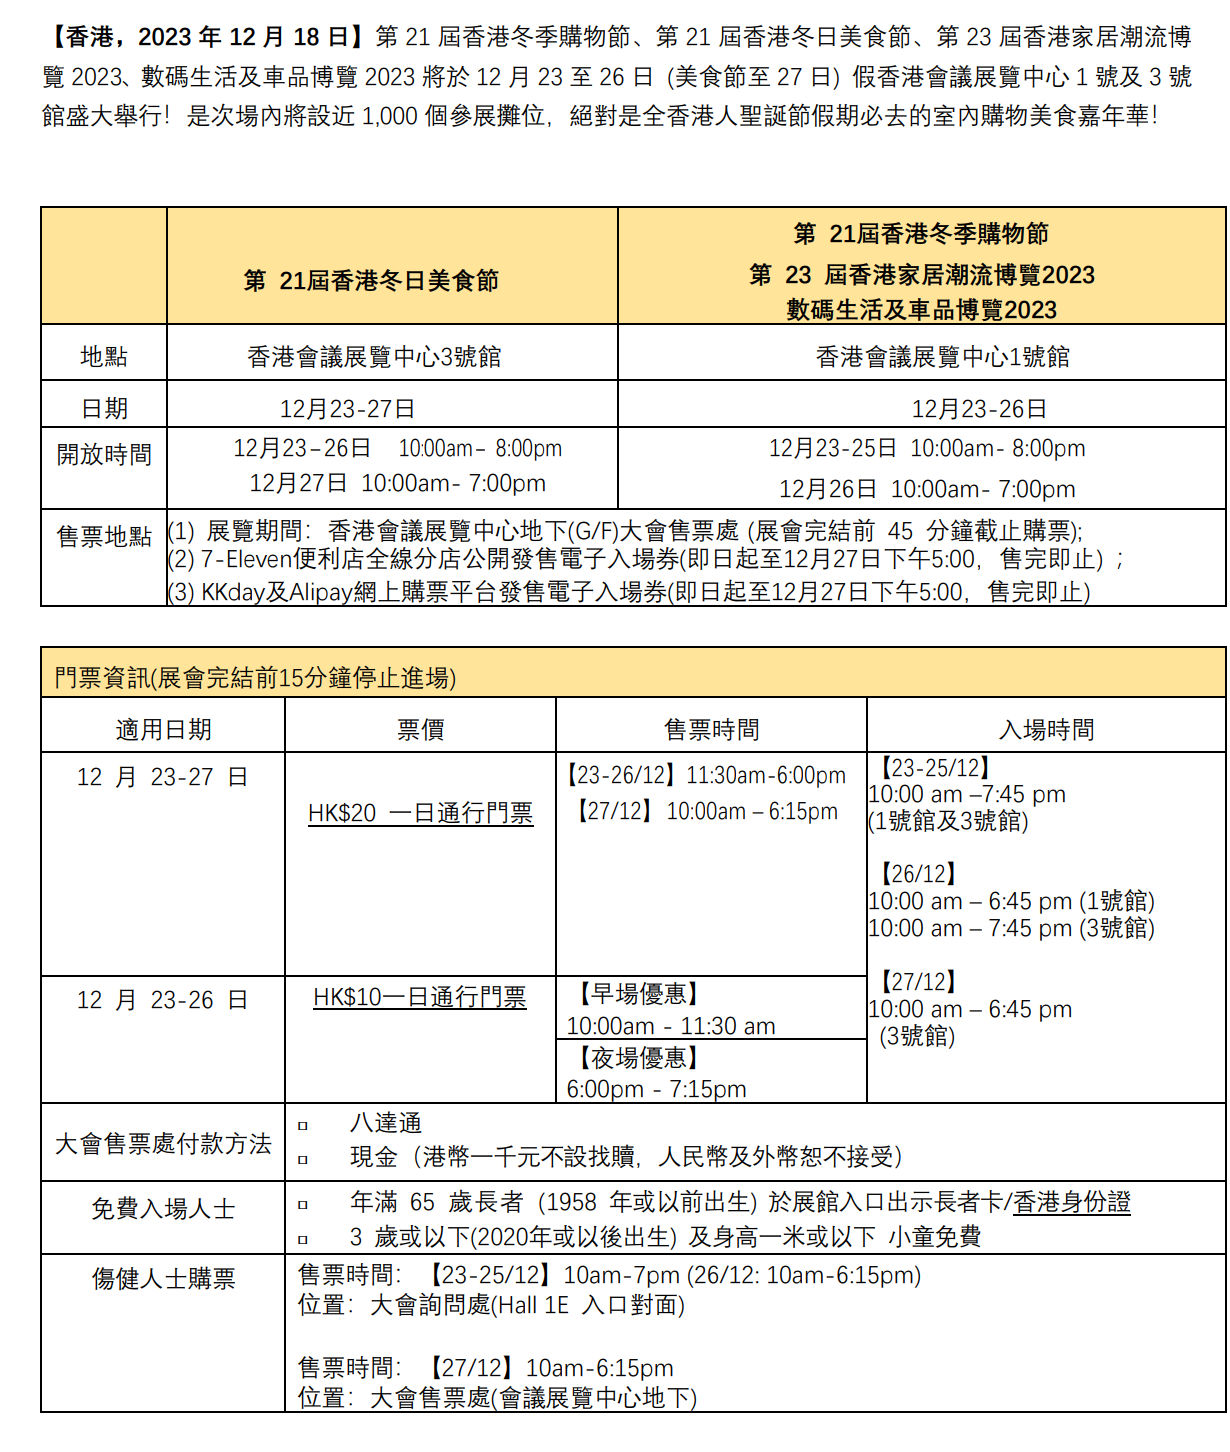 香港冬日美食節2023(至23年12月26日)圖片2